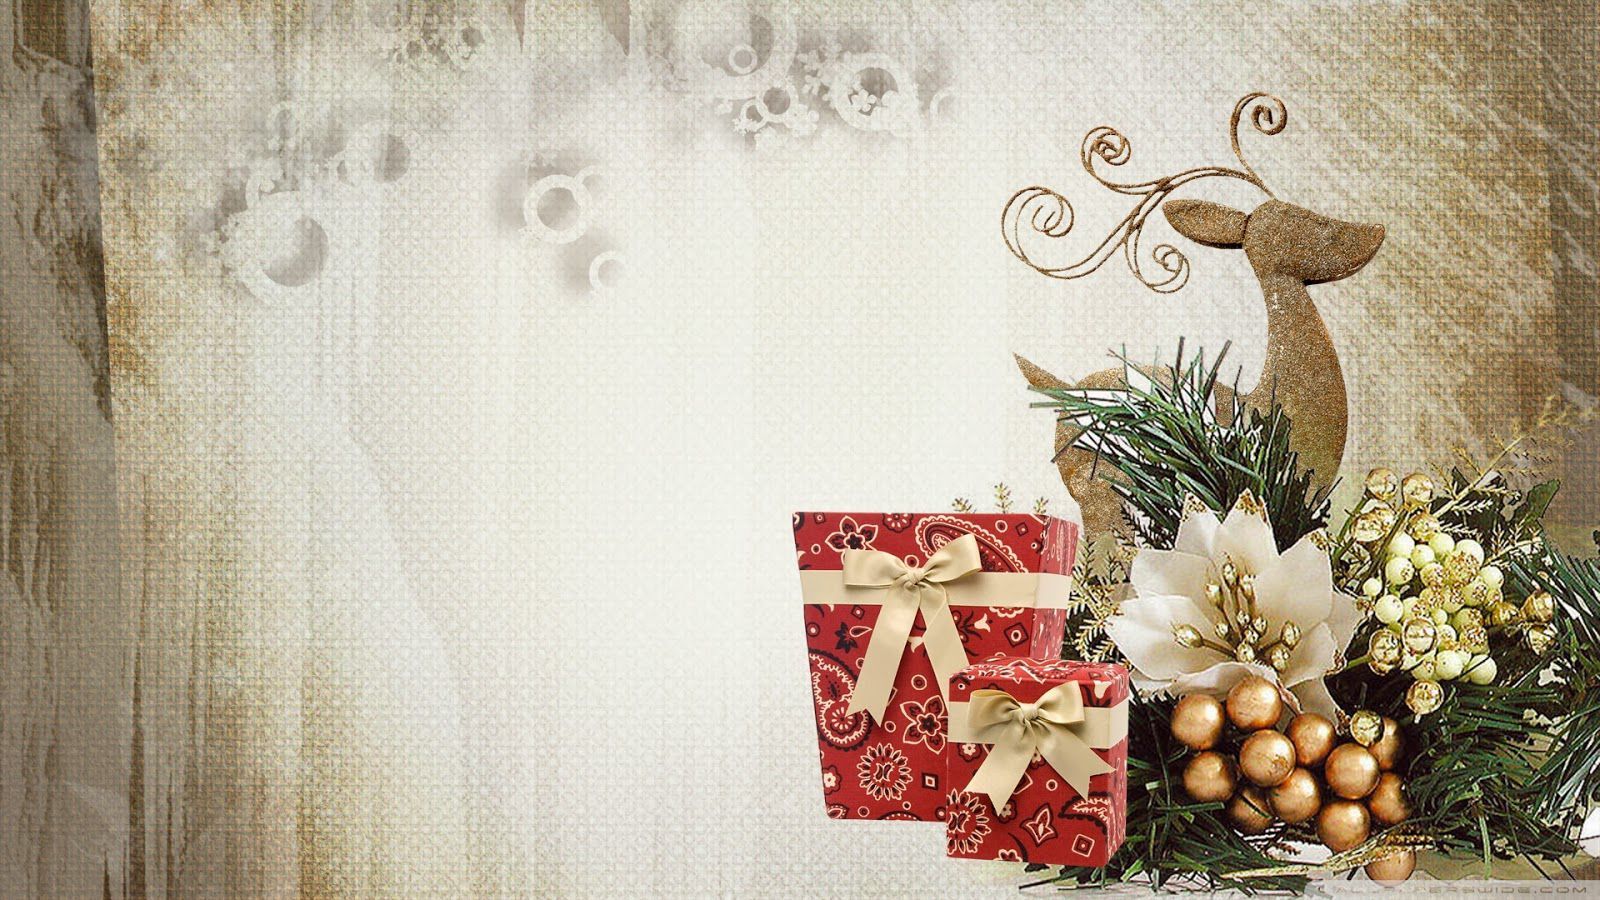 Elegant HD 2018 Wallpaper of Christmas for Mobile & Desktop